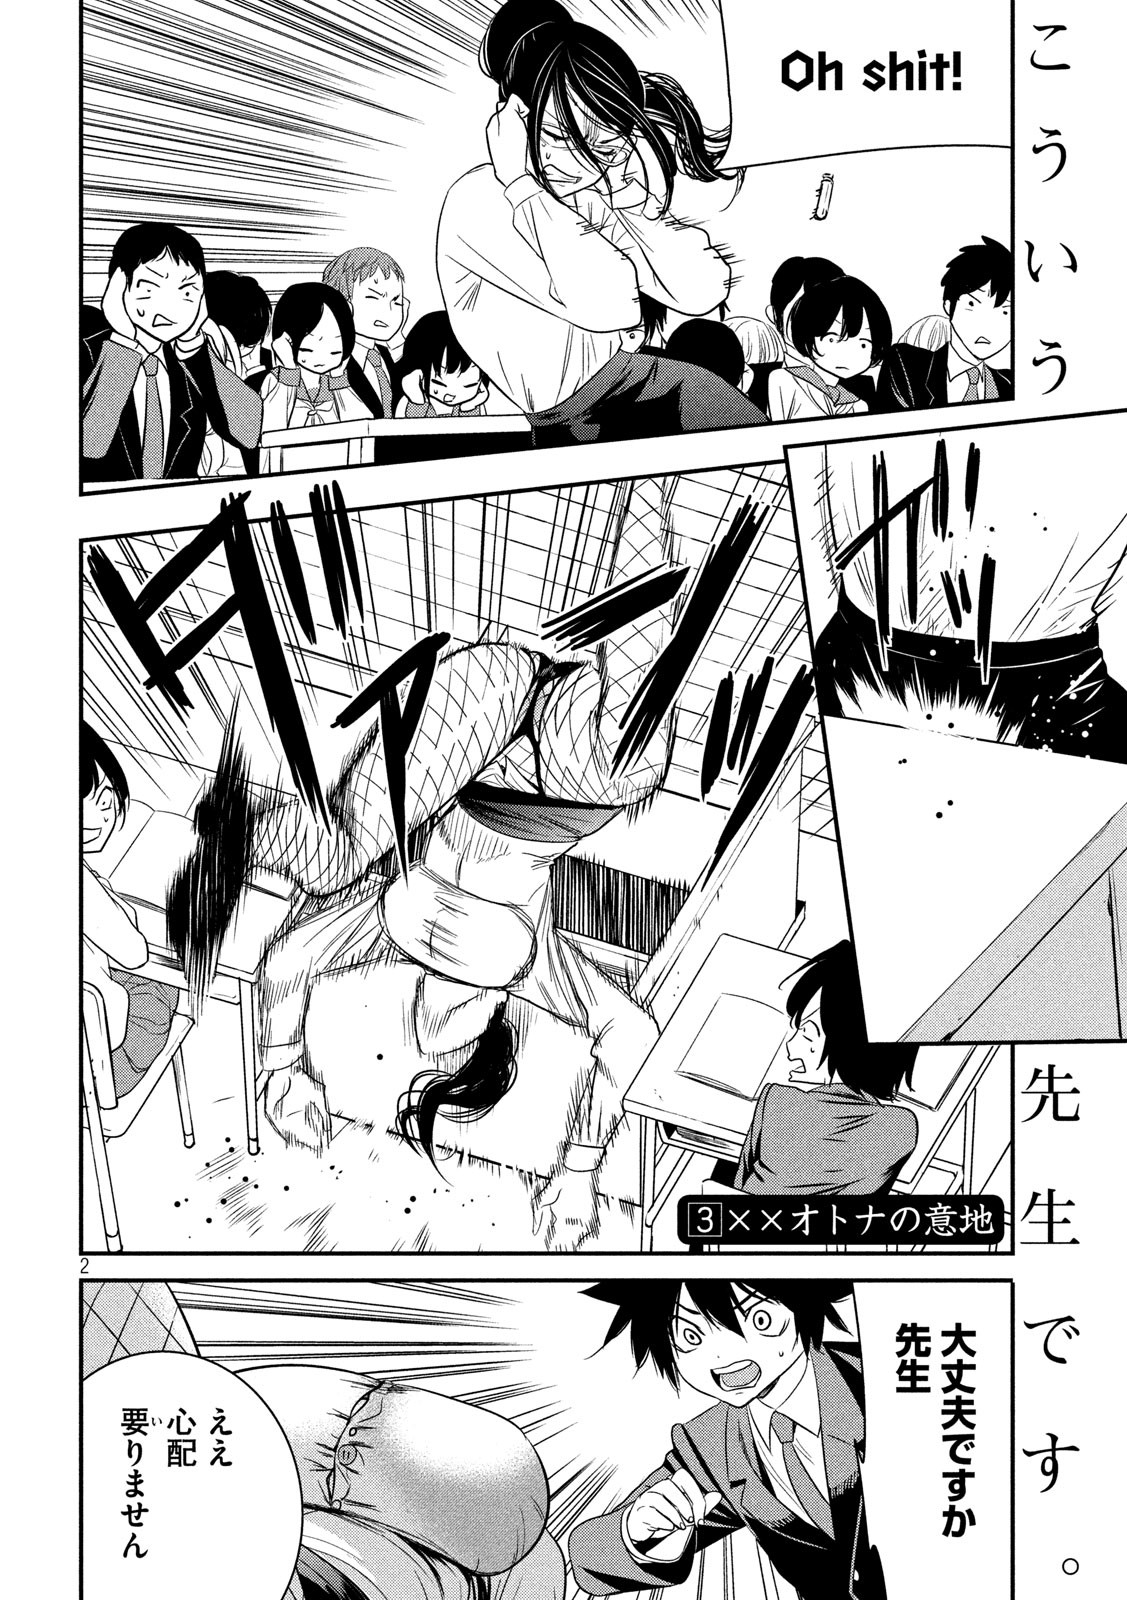 Eigo ×× Sensei - Chapter 3 - Page 2